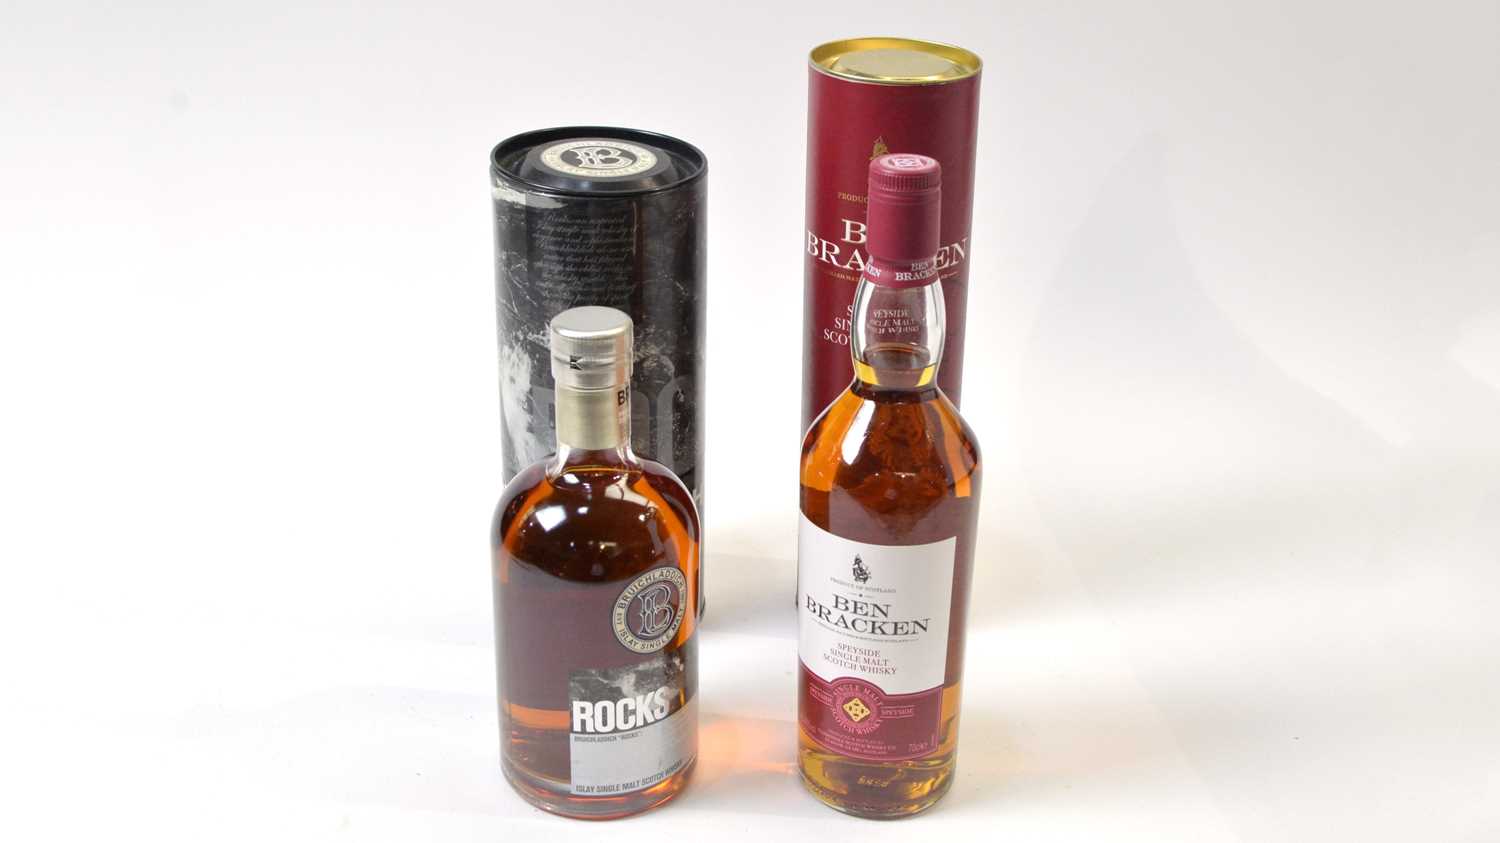 Lot 812 - Two bottles of Single Malt Scotch Whisky